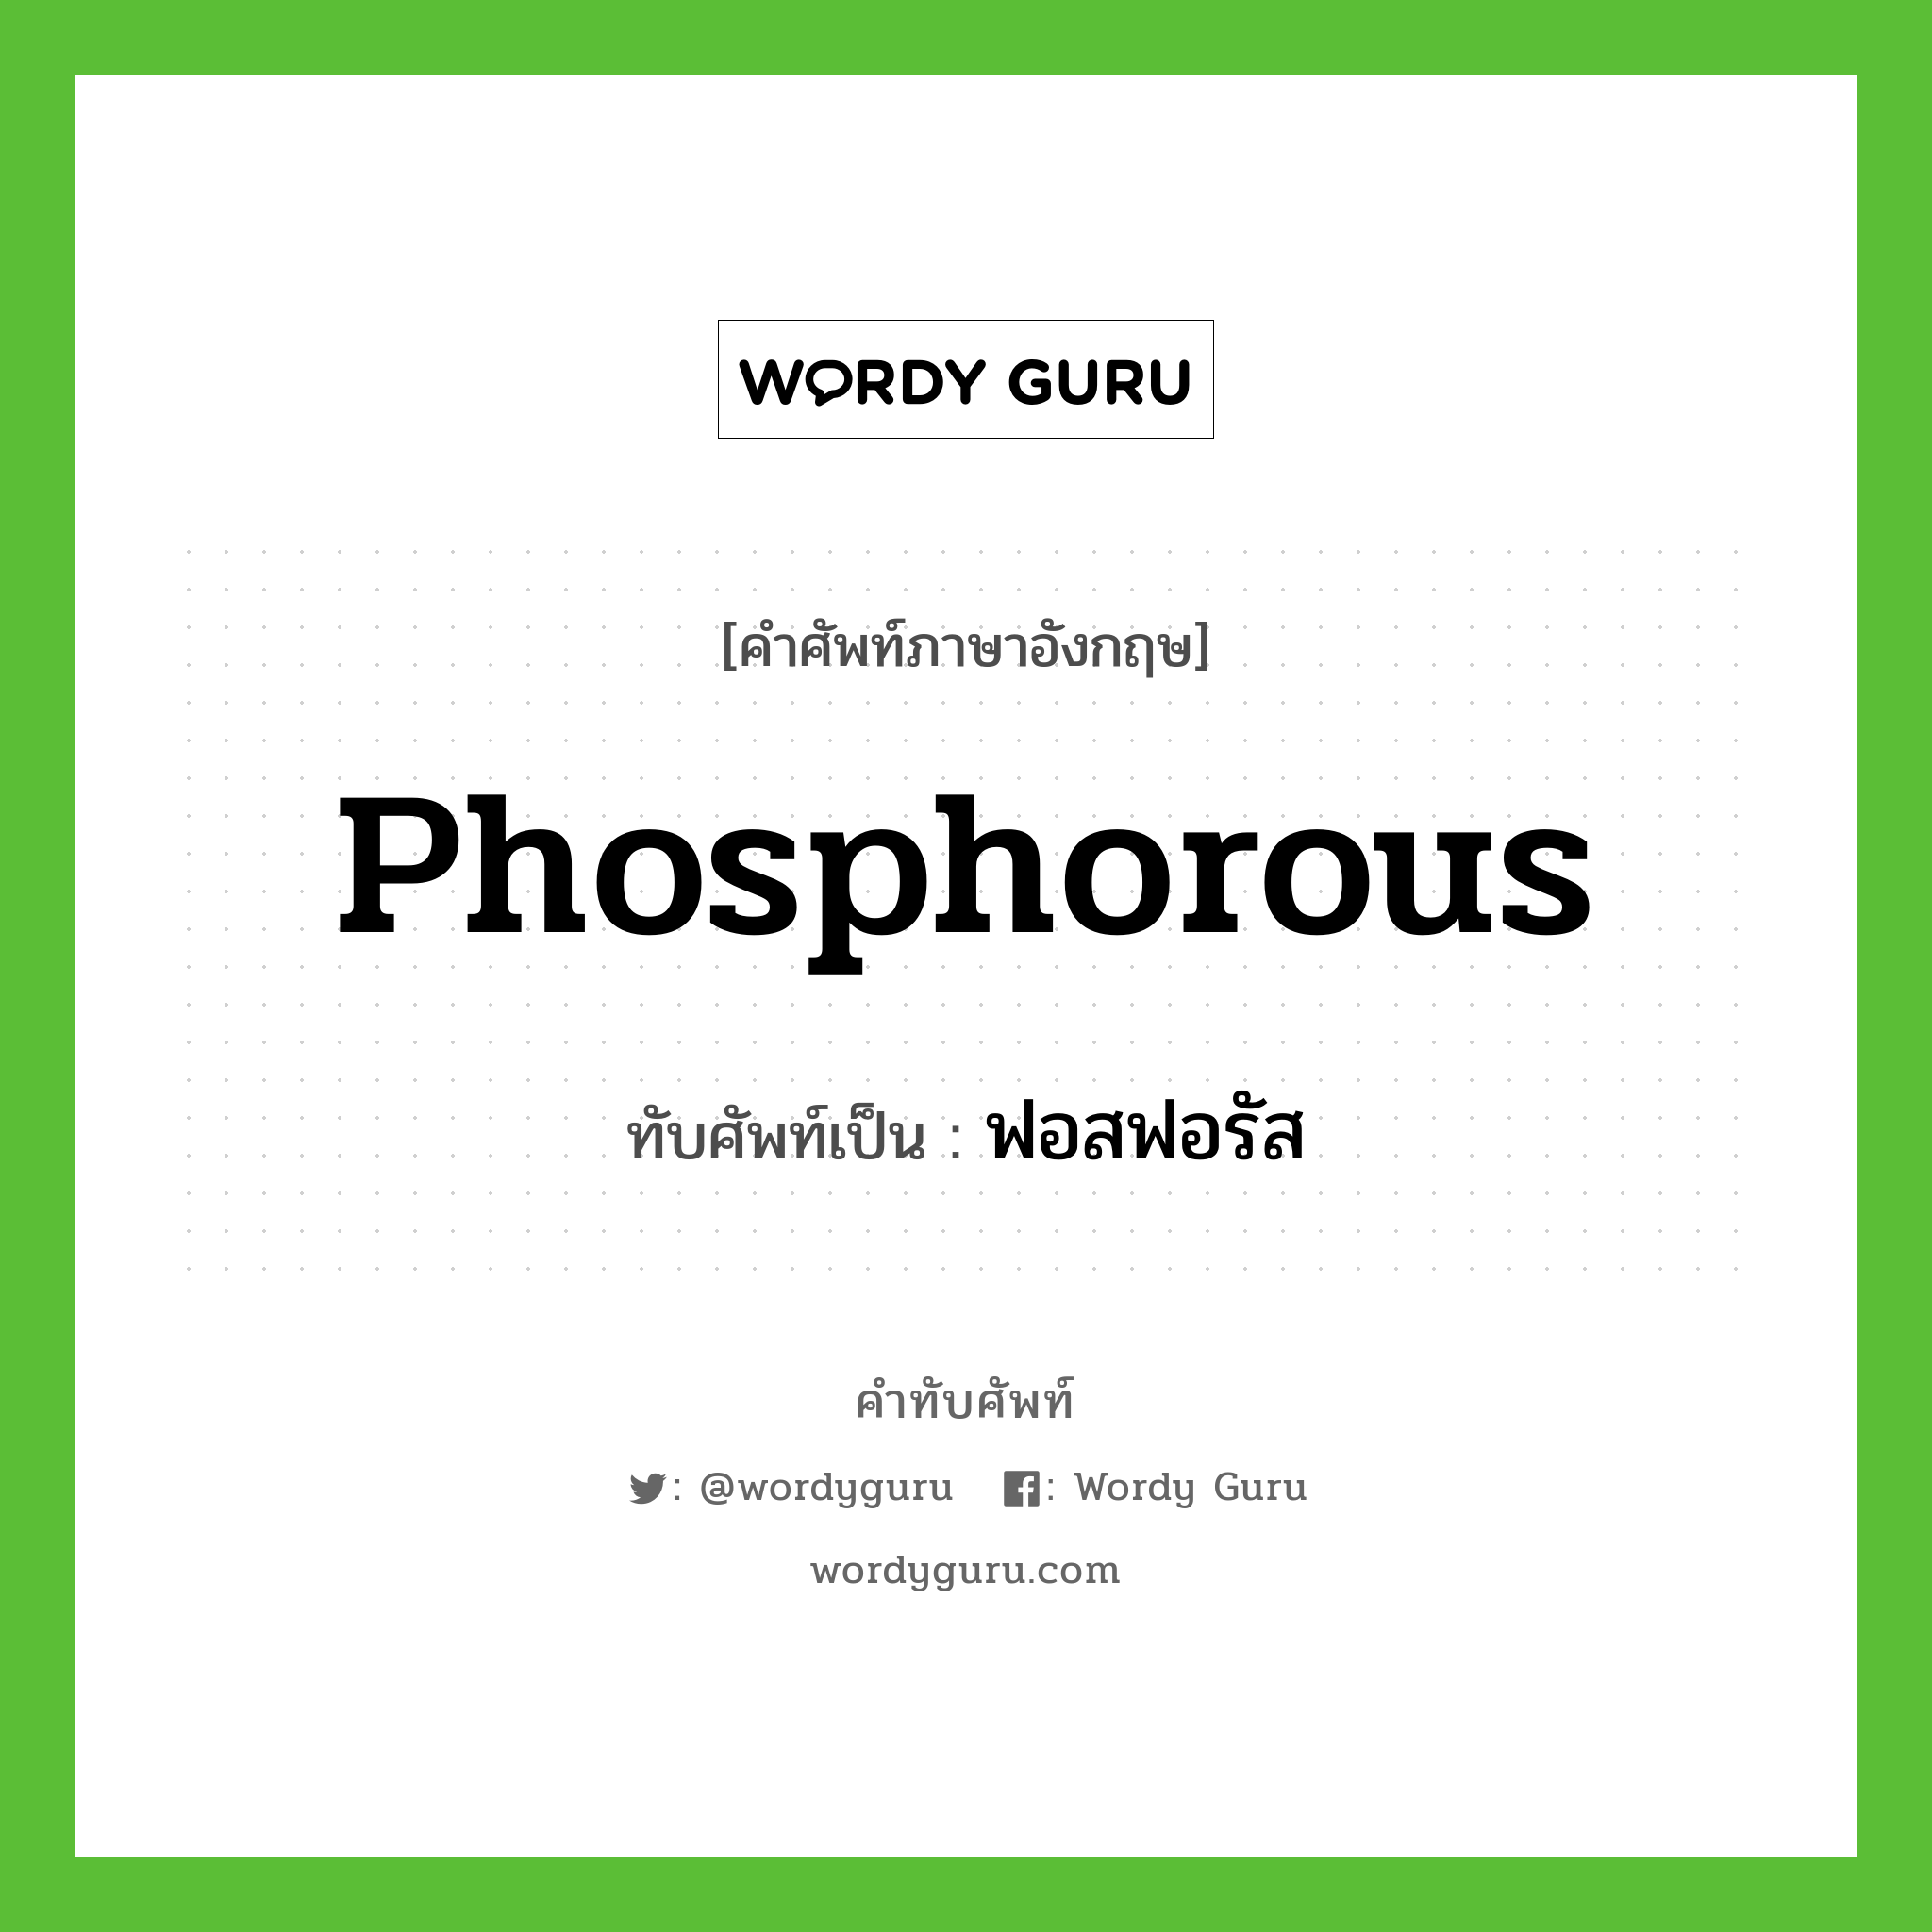 phosphorous เขียนเป็นคำไทยว่าอะไร?, คำศัพท์ภาษาอังกฤษ phosphorous ทับศัพท์เป็น ฟอสฟอรัส